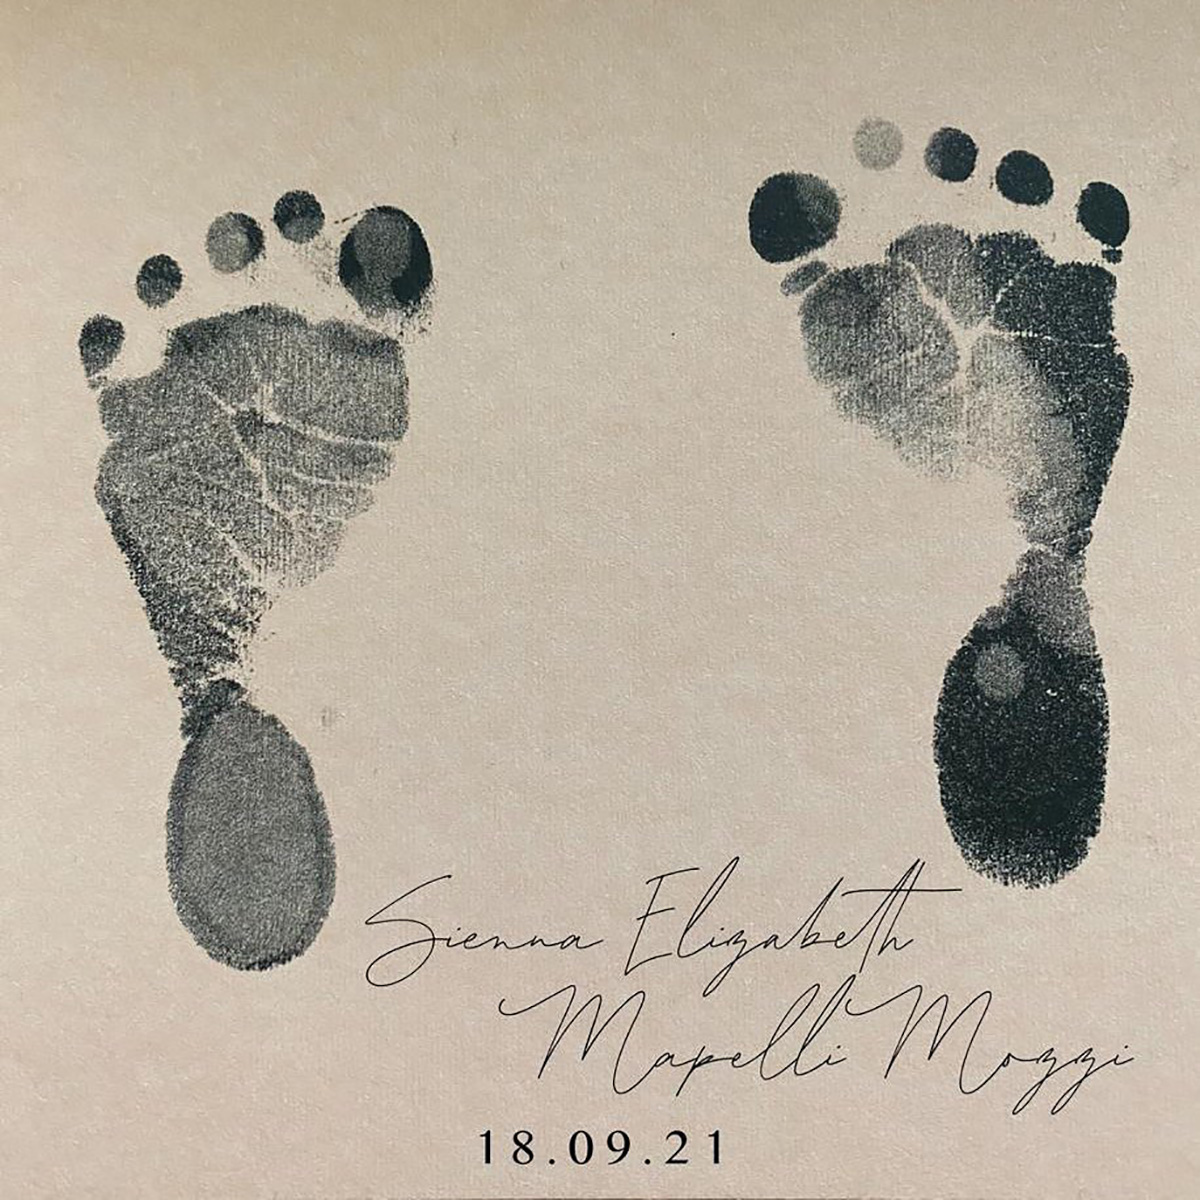 Официальное объявление о рождении Сиены, дочери принцессы Беатрис и Эдоардо Мапелли-Моцци, 18 сентября 2021